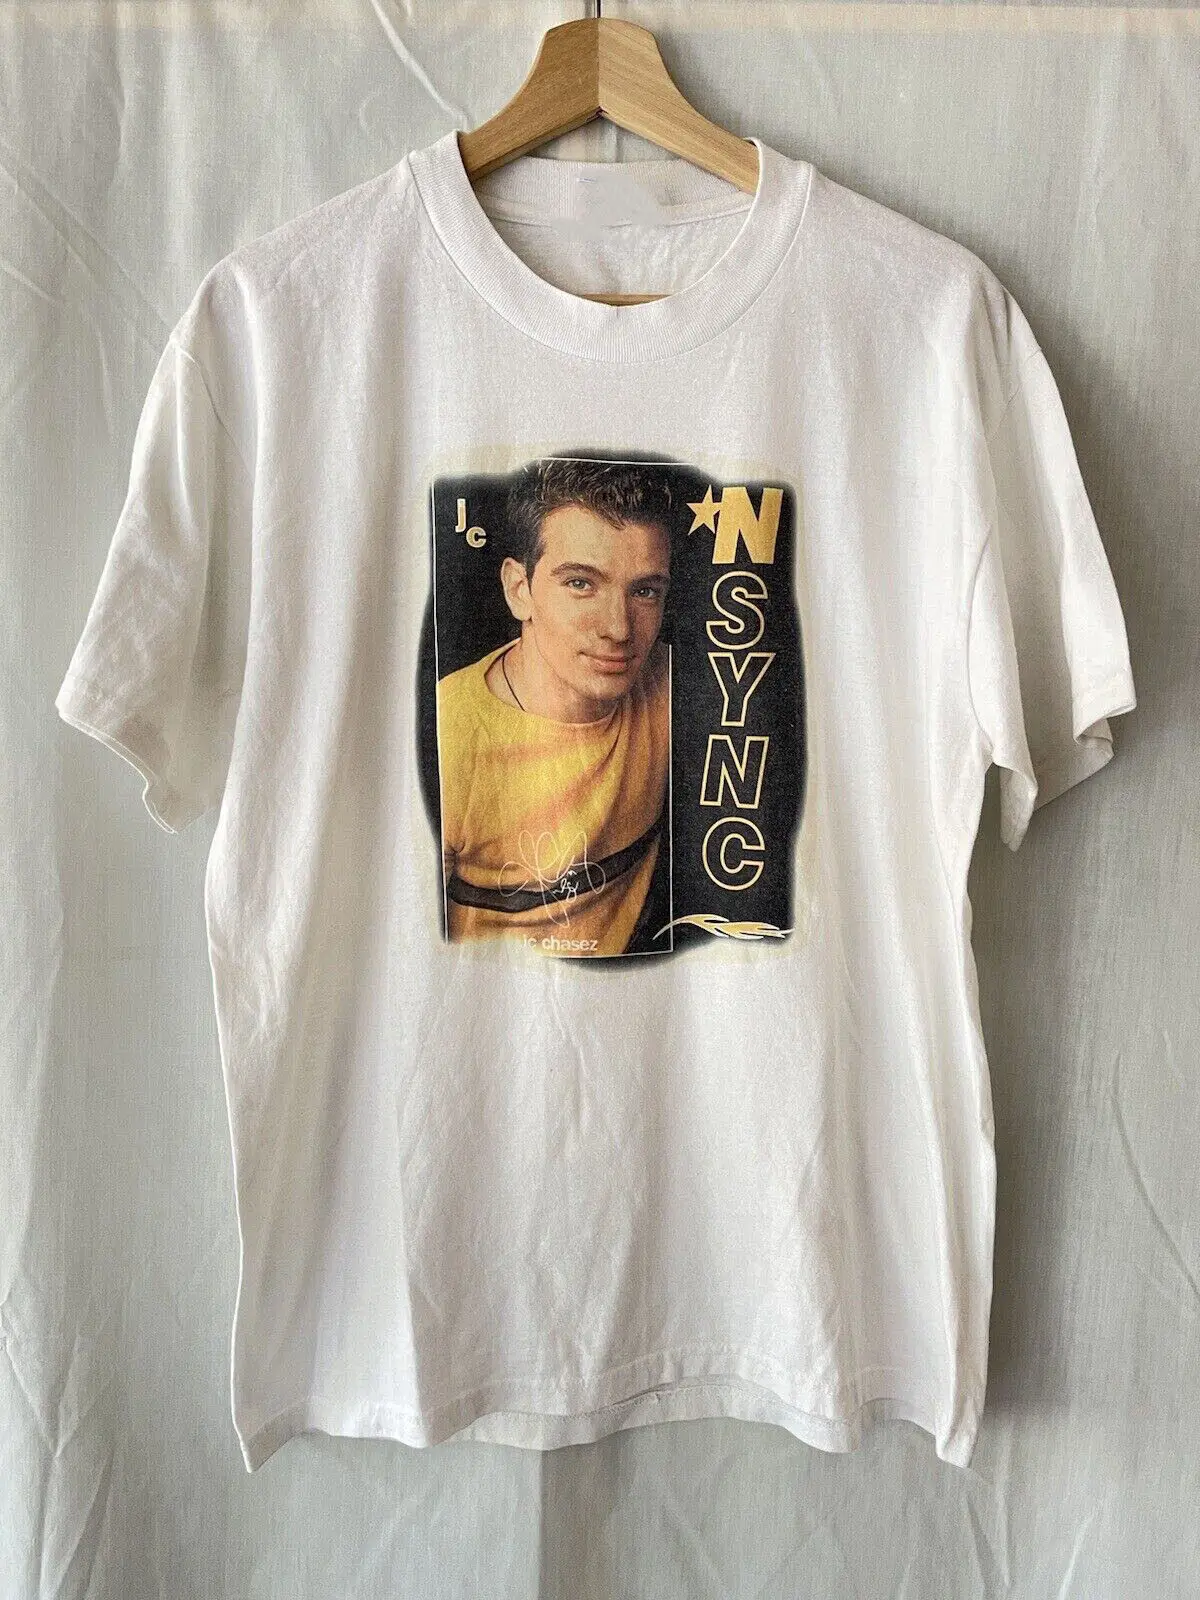 

Винтажная Плотная хлопковая белая футболка JC Chasez музыкальная звезда все размеры